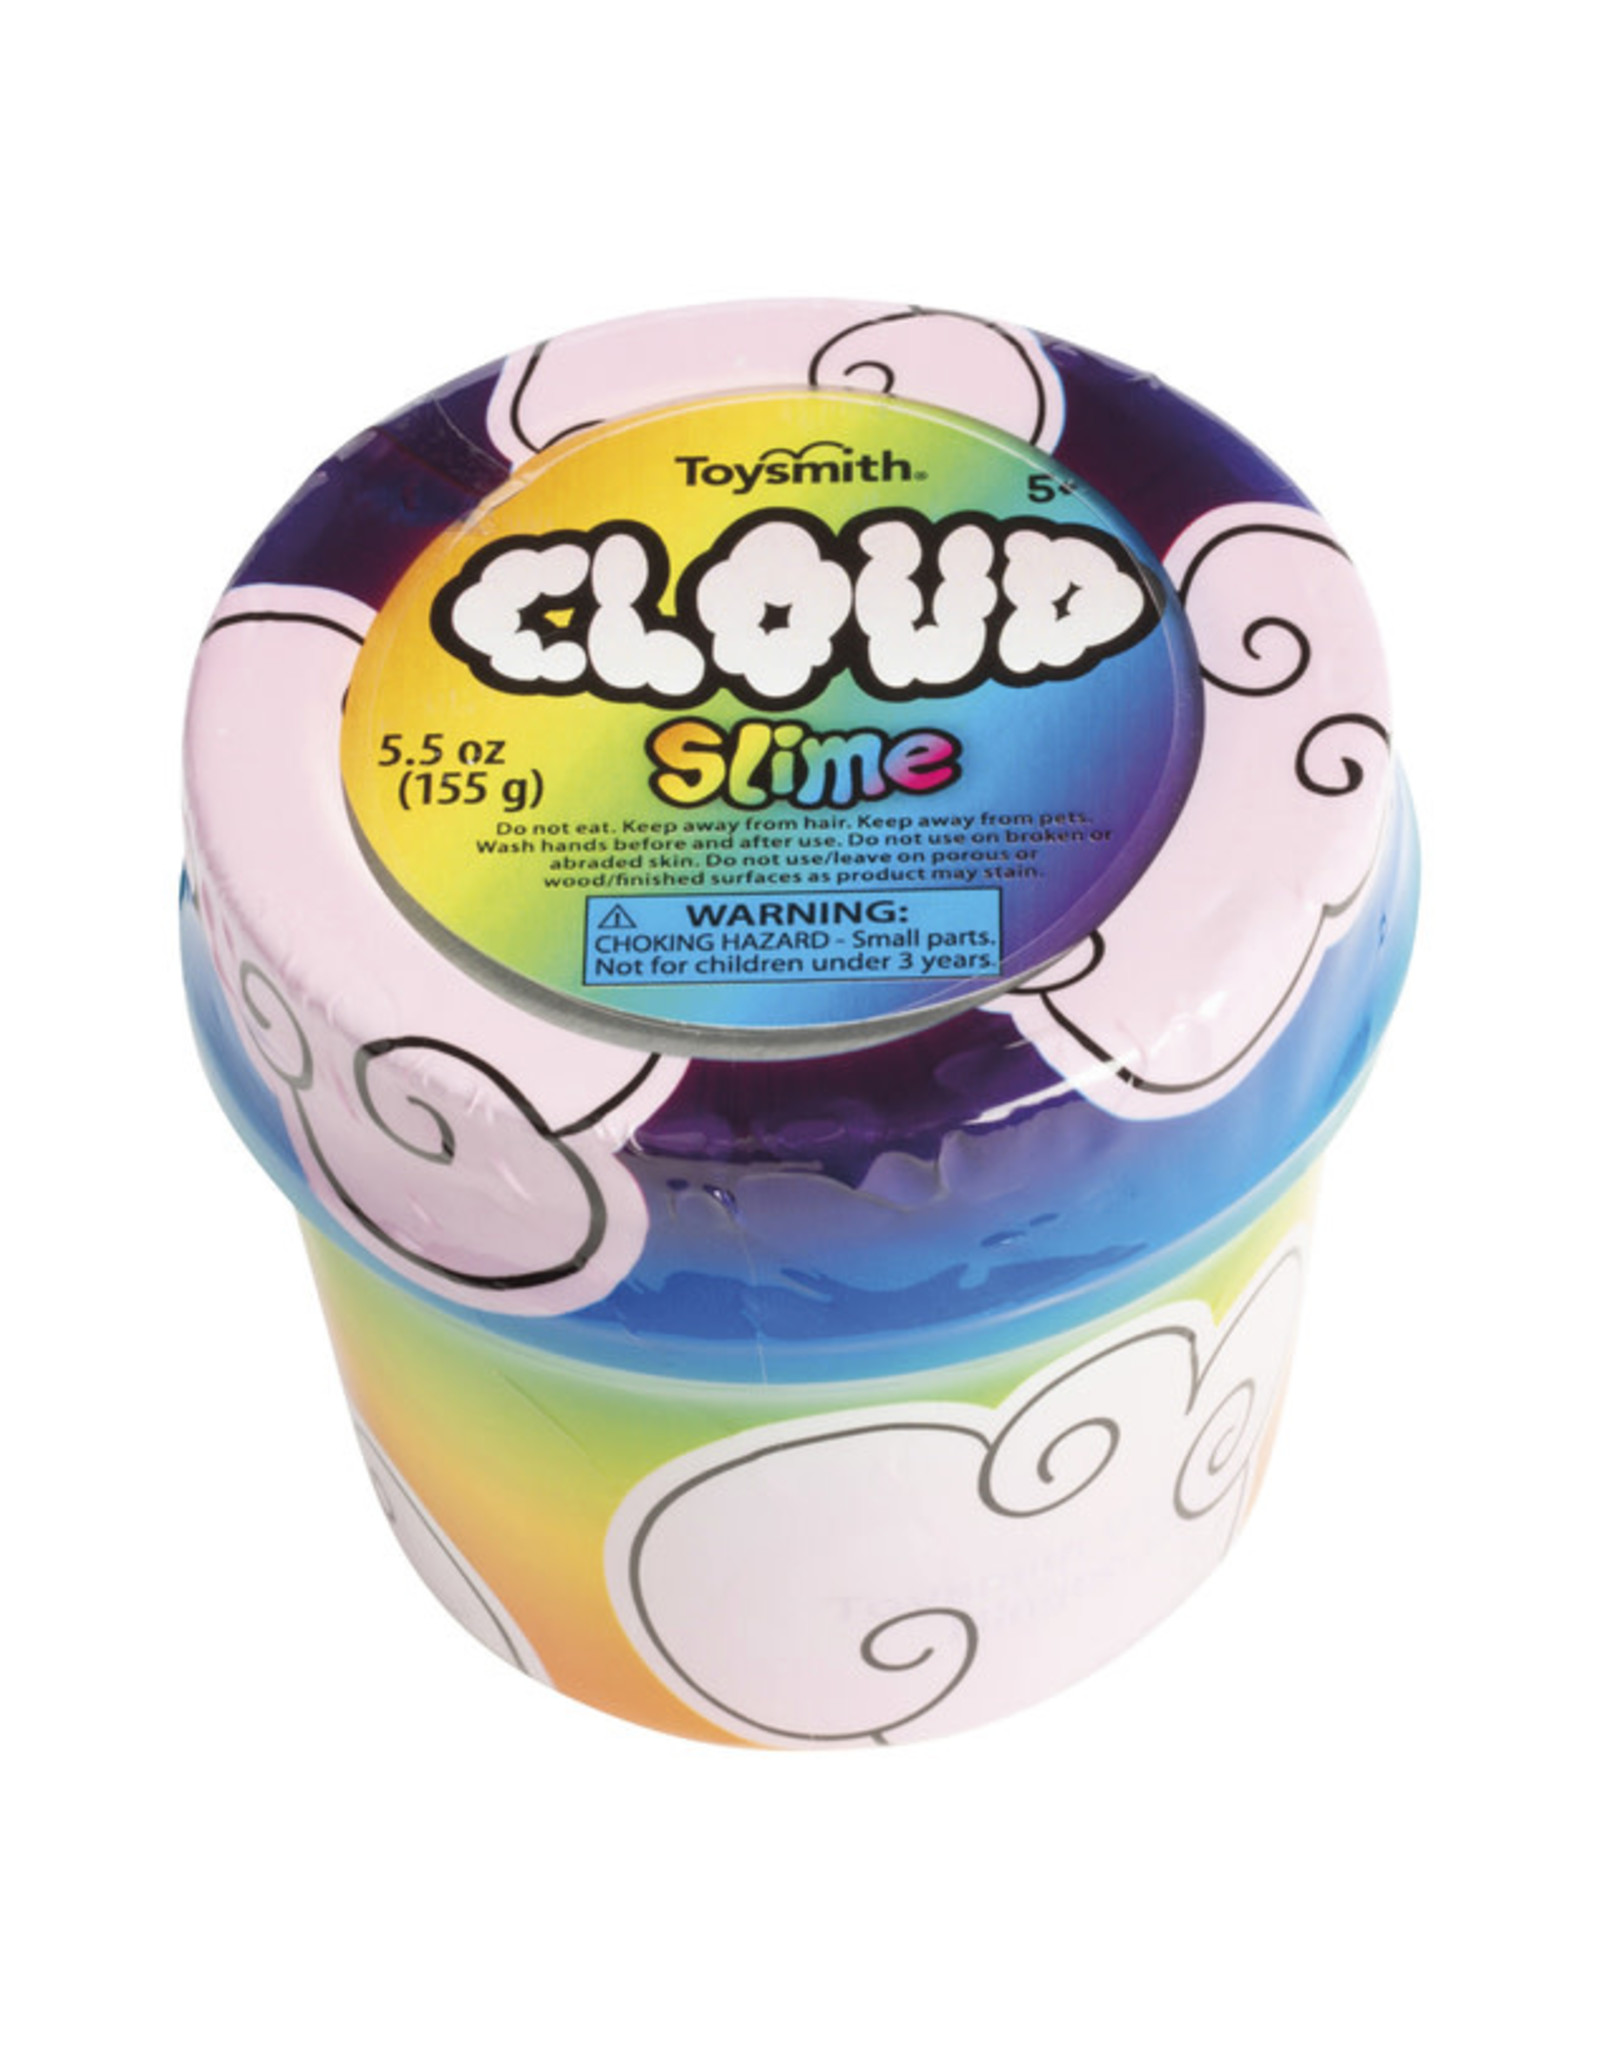 Toysmith Cloud Slime